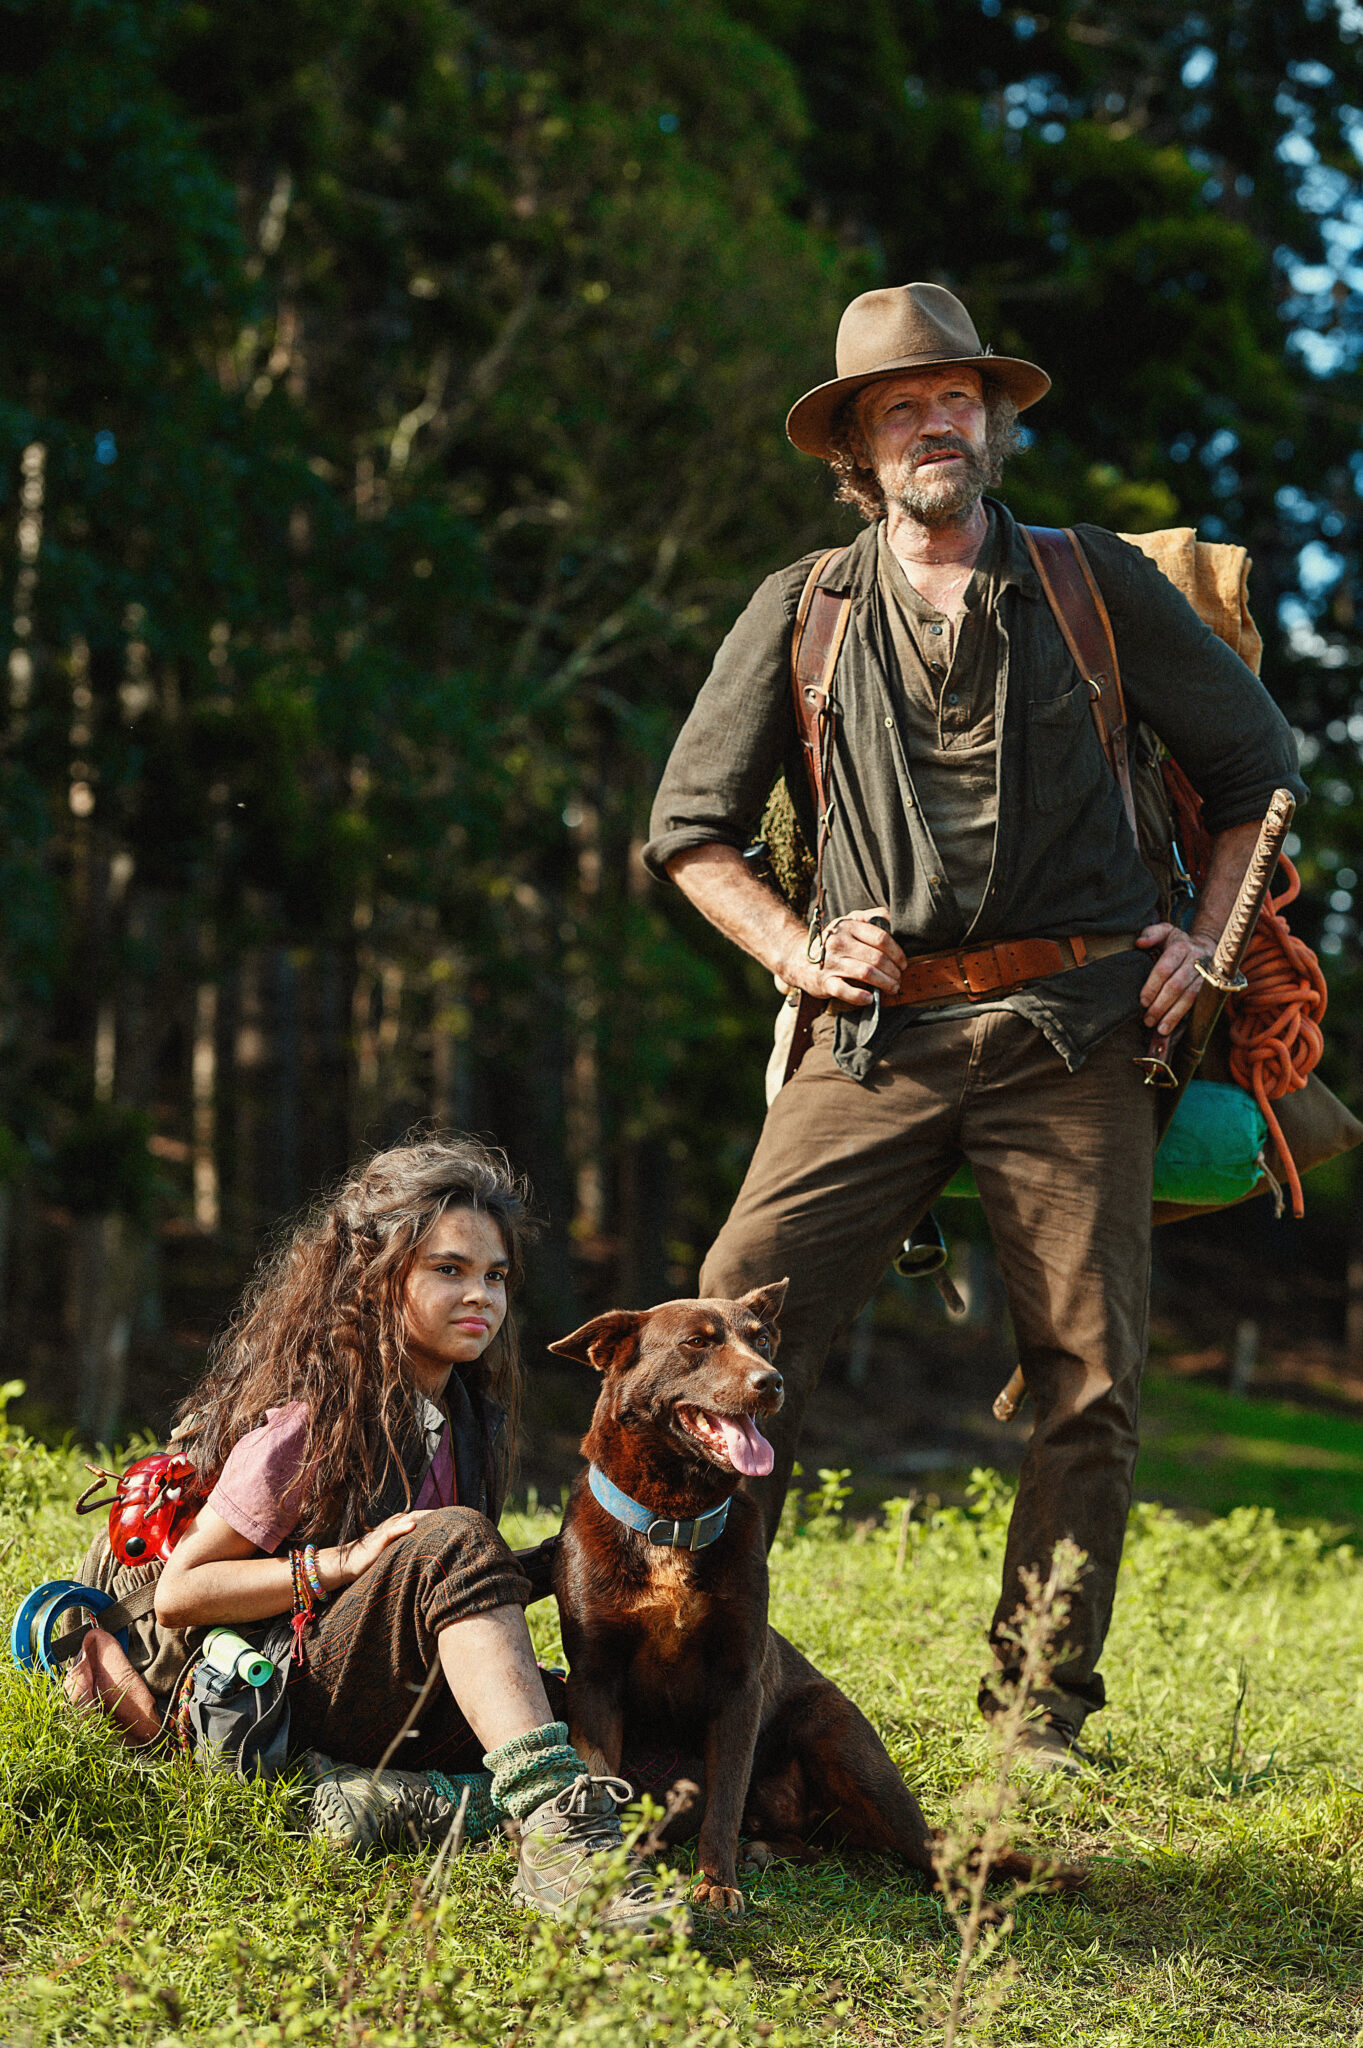 Auf einer Wiese sitzt Minnow (Ariana Greenblatt) mit einem Hund. Neben ihr steht Clyde (Michael Rooker), der eine olivgrüne Jacke und eine braune Hose trägt und auf dem Kopf einen Cowboyhut trägt.